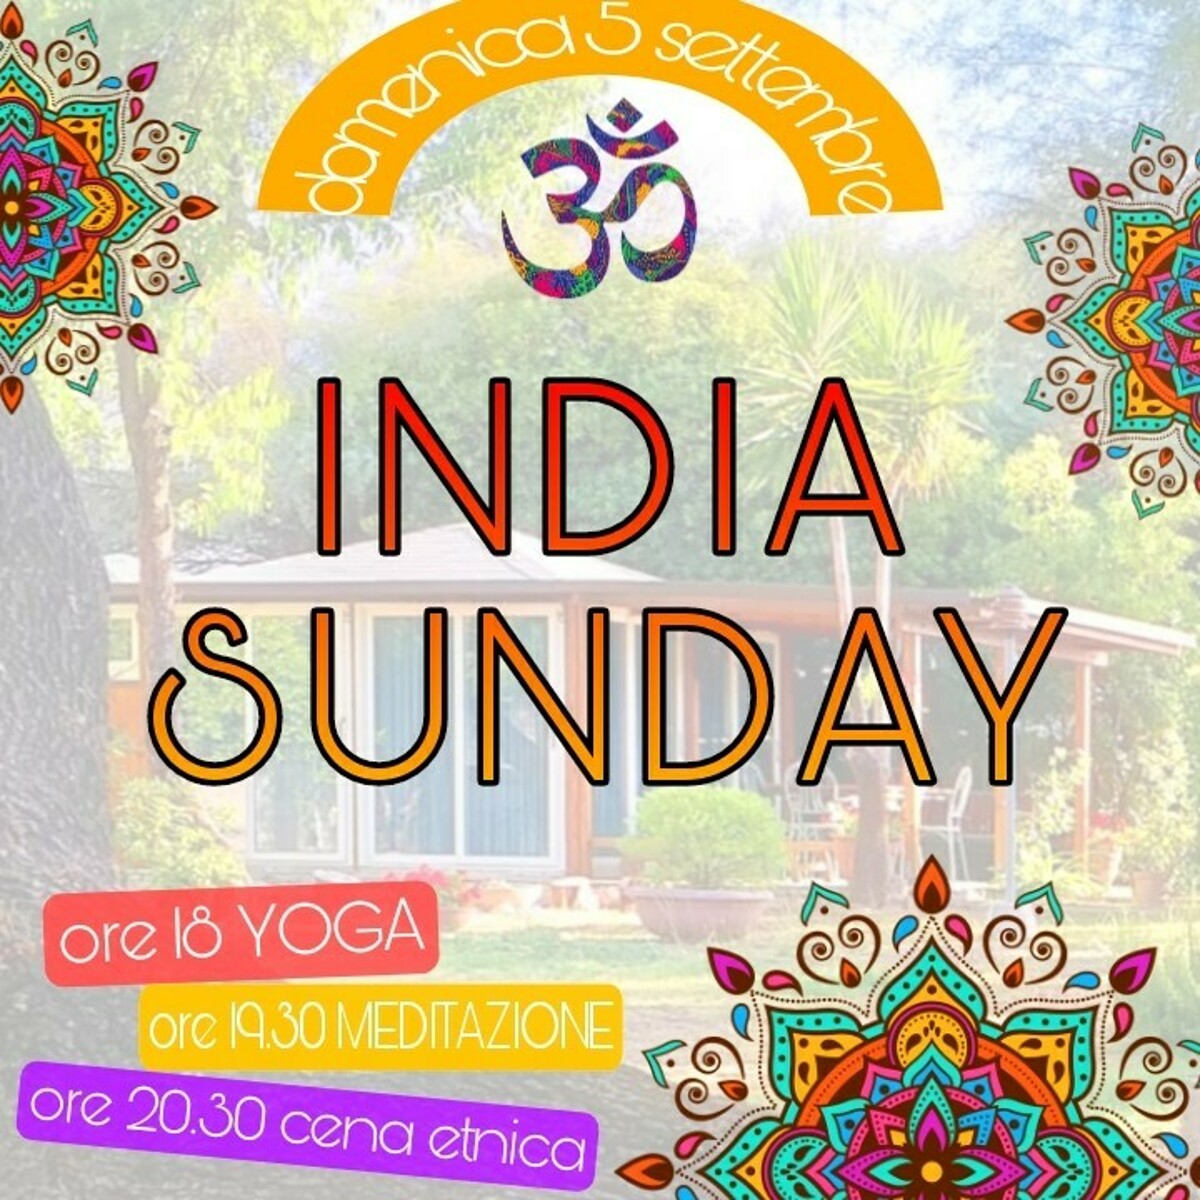 Cena indiana e lezioni di yoga gratuite per tutti: appuntamento a Pontecagnano